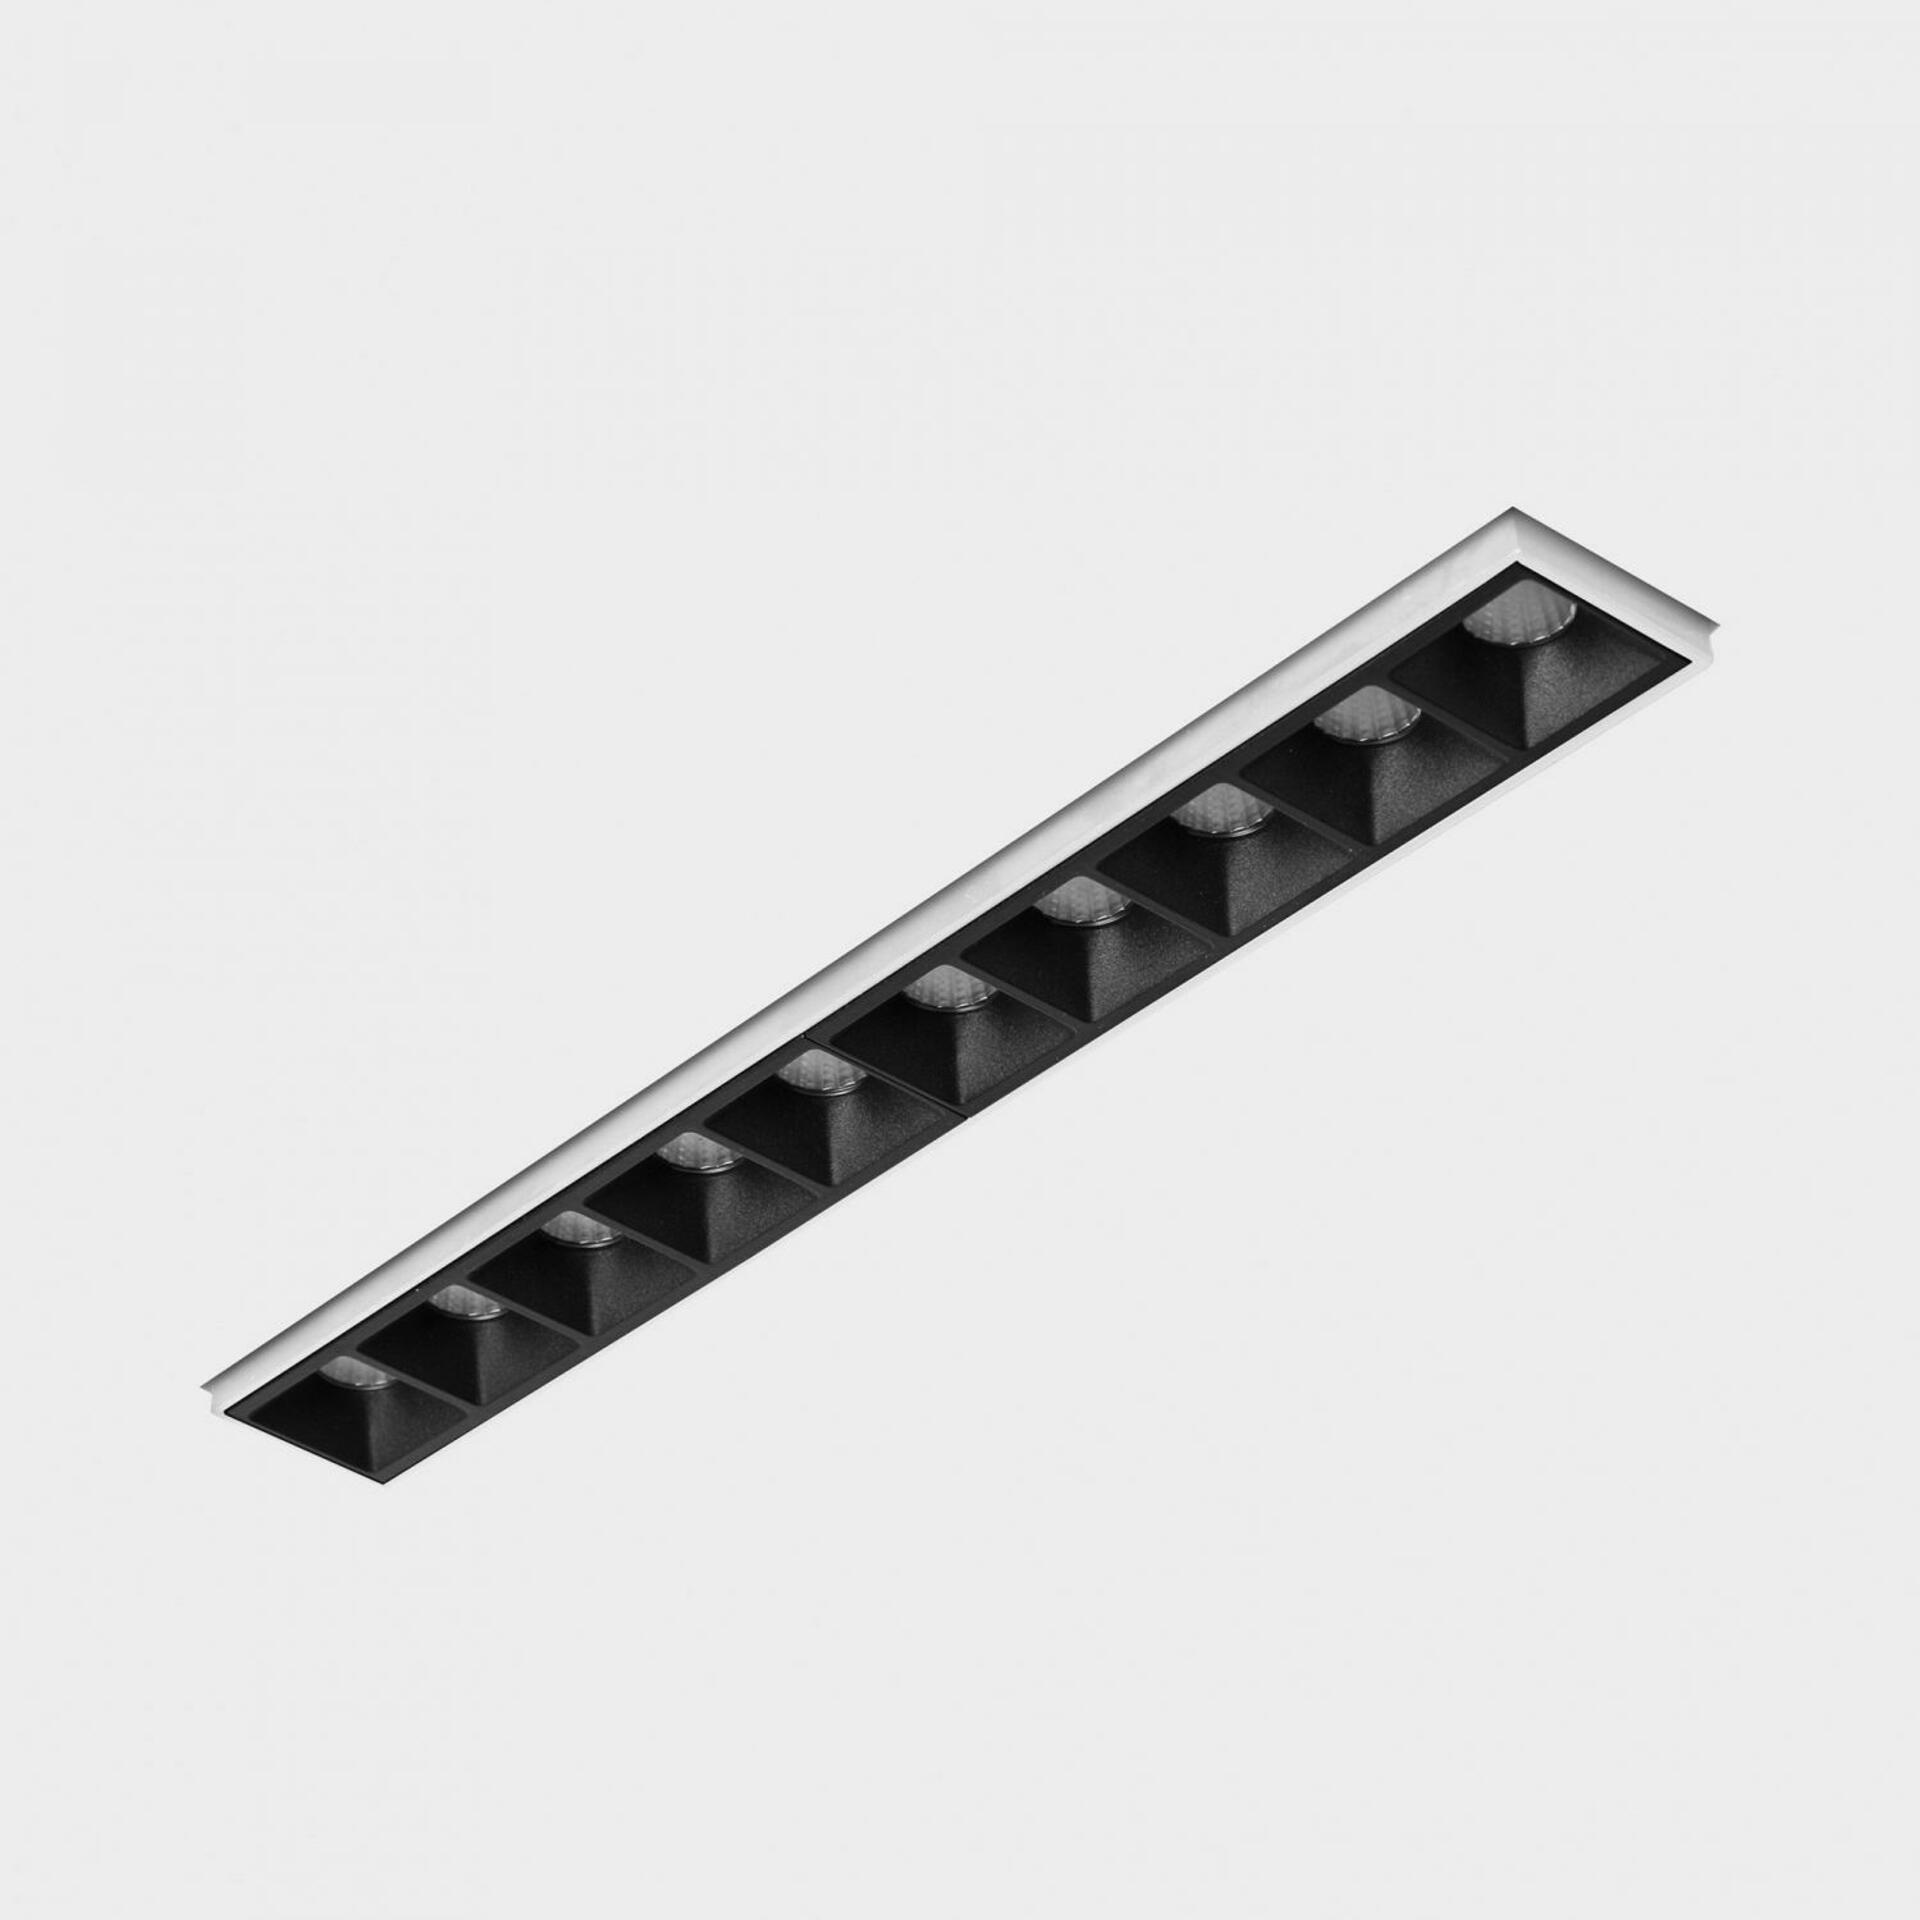 KOHL LIGHTING KOHL-Lighting NSES bezrámečkové zapuštěné svítidlo 270x35 mm bílá-černá 20 W CRI 90 3000K PUSH